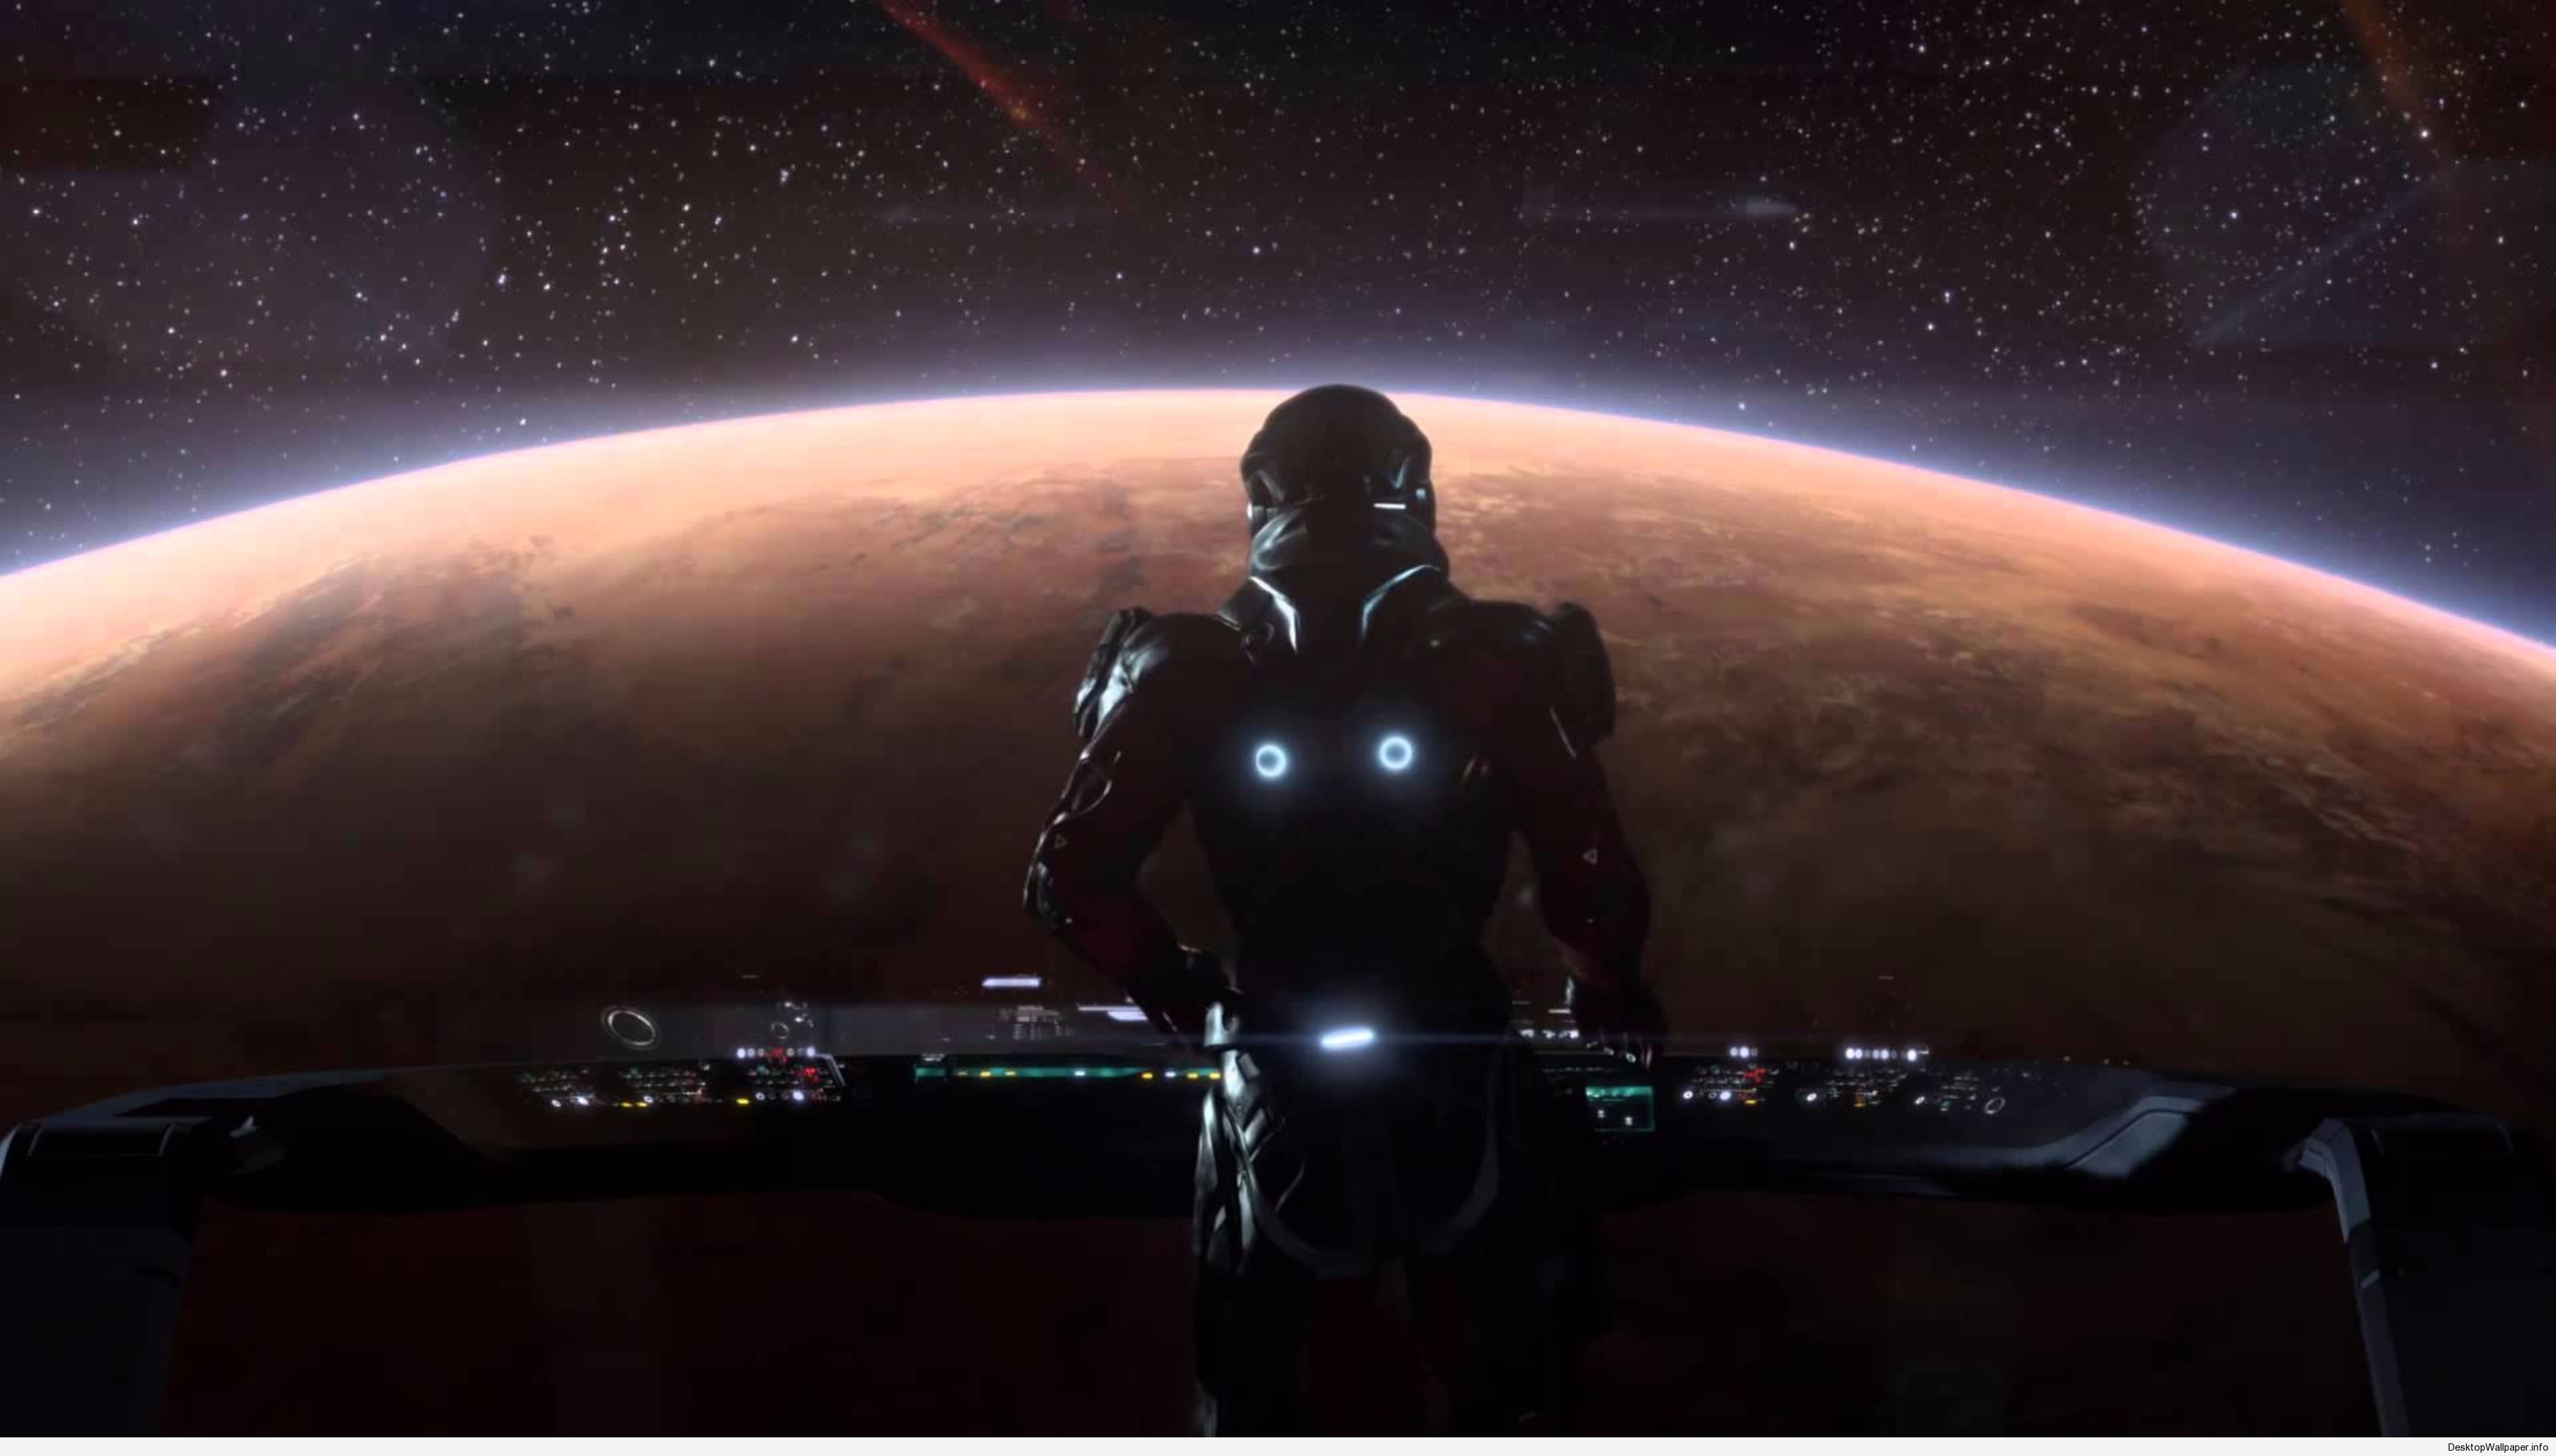 Mass Effect 3 Wallpapers  Top Free Mass Effect 3 Backgrounds   WallpaperAccess